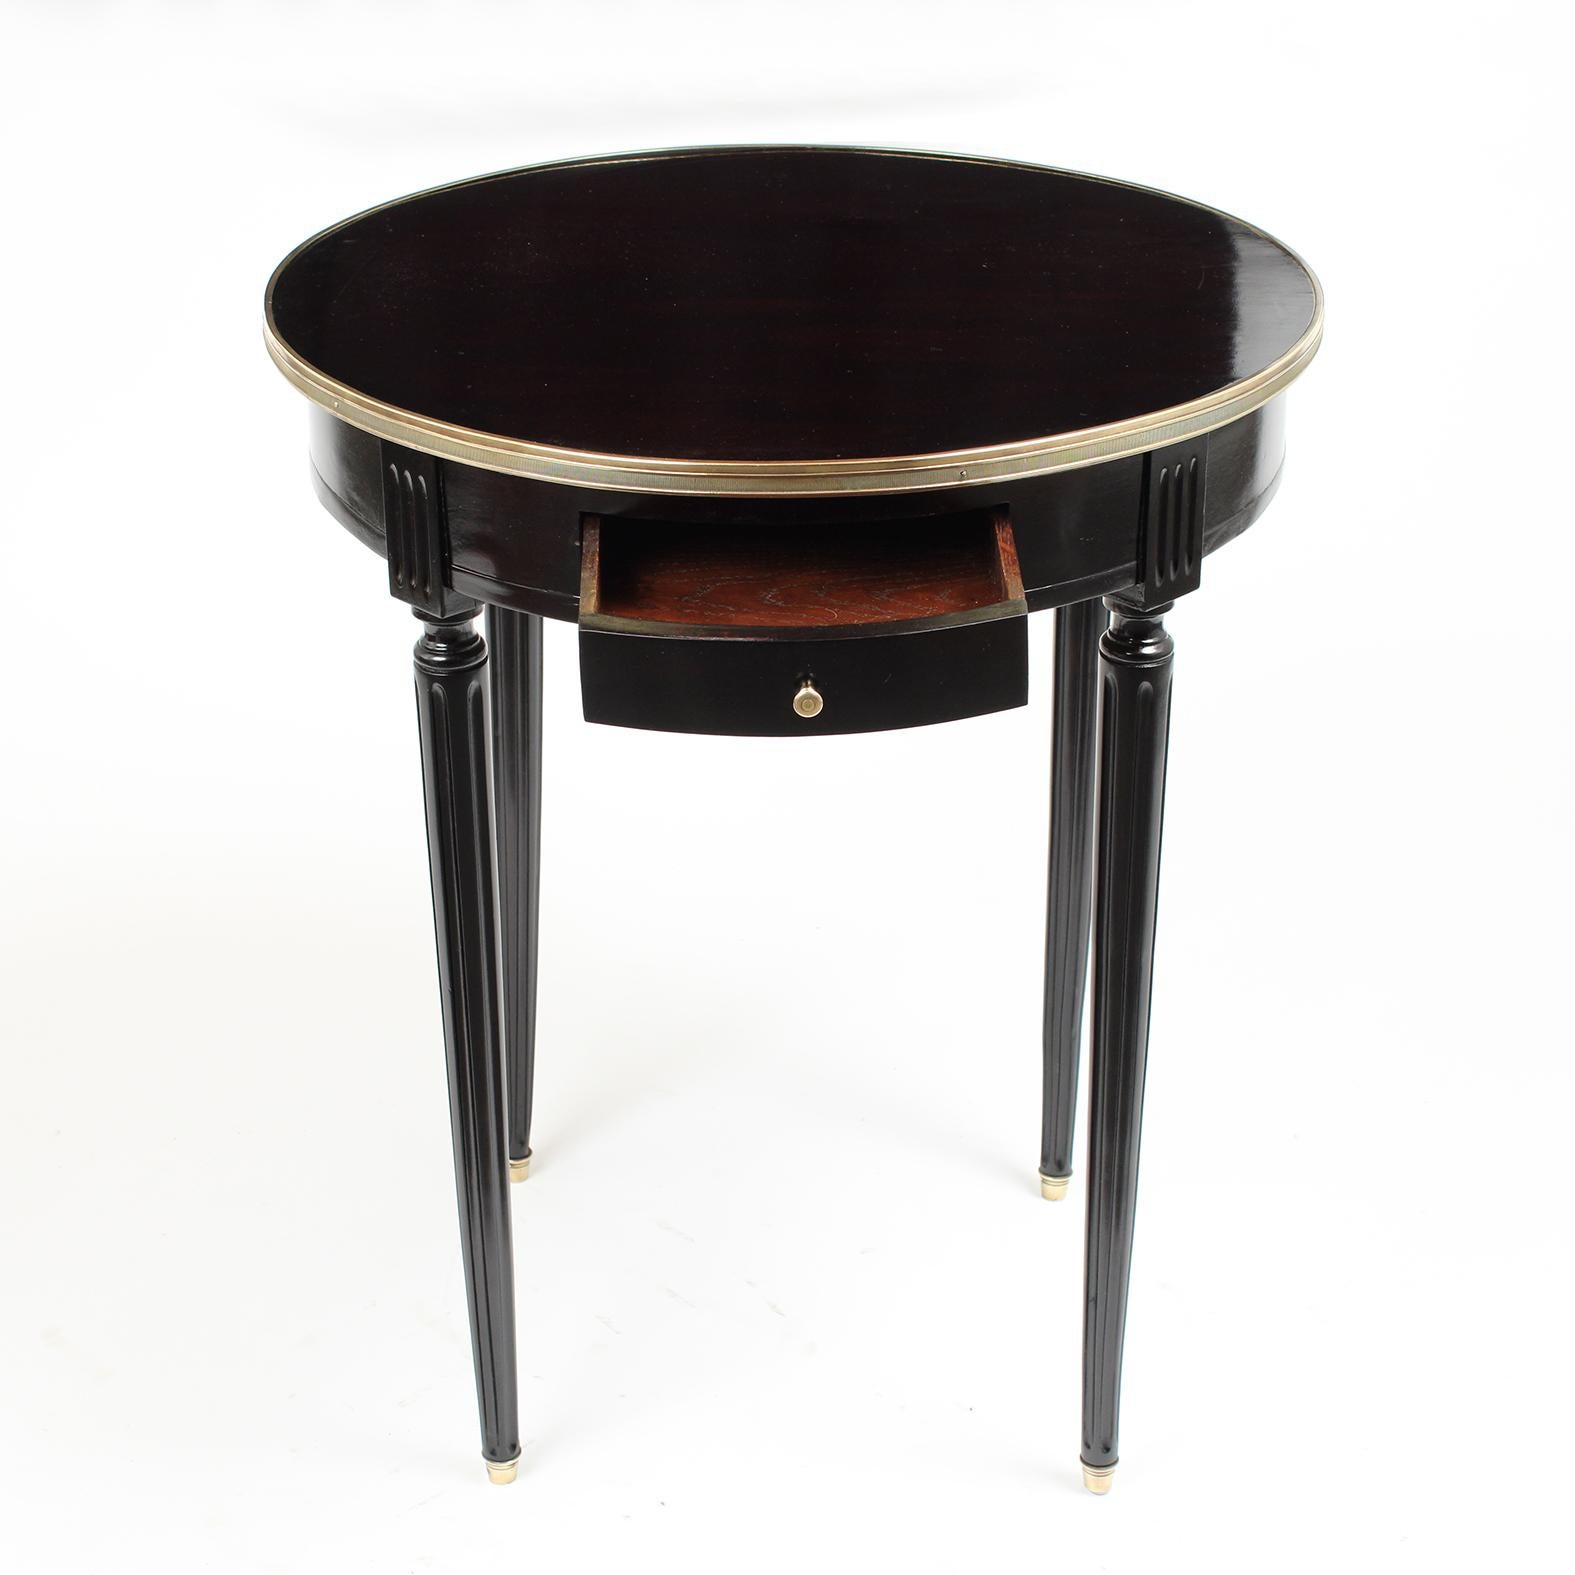 Antique Louis XVI Style Round Ebonized Side Table (Französisch)